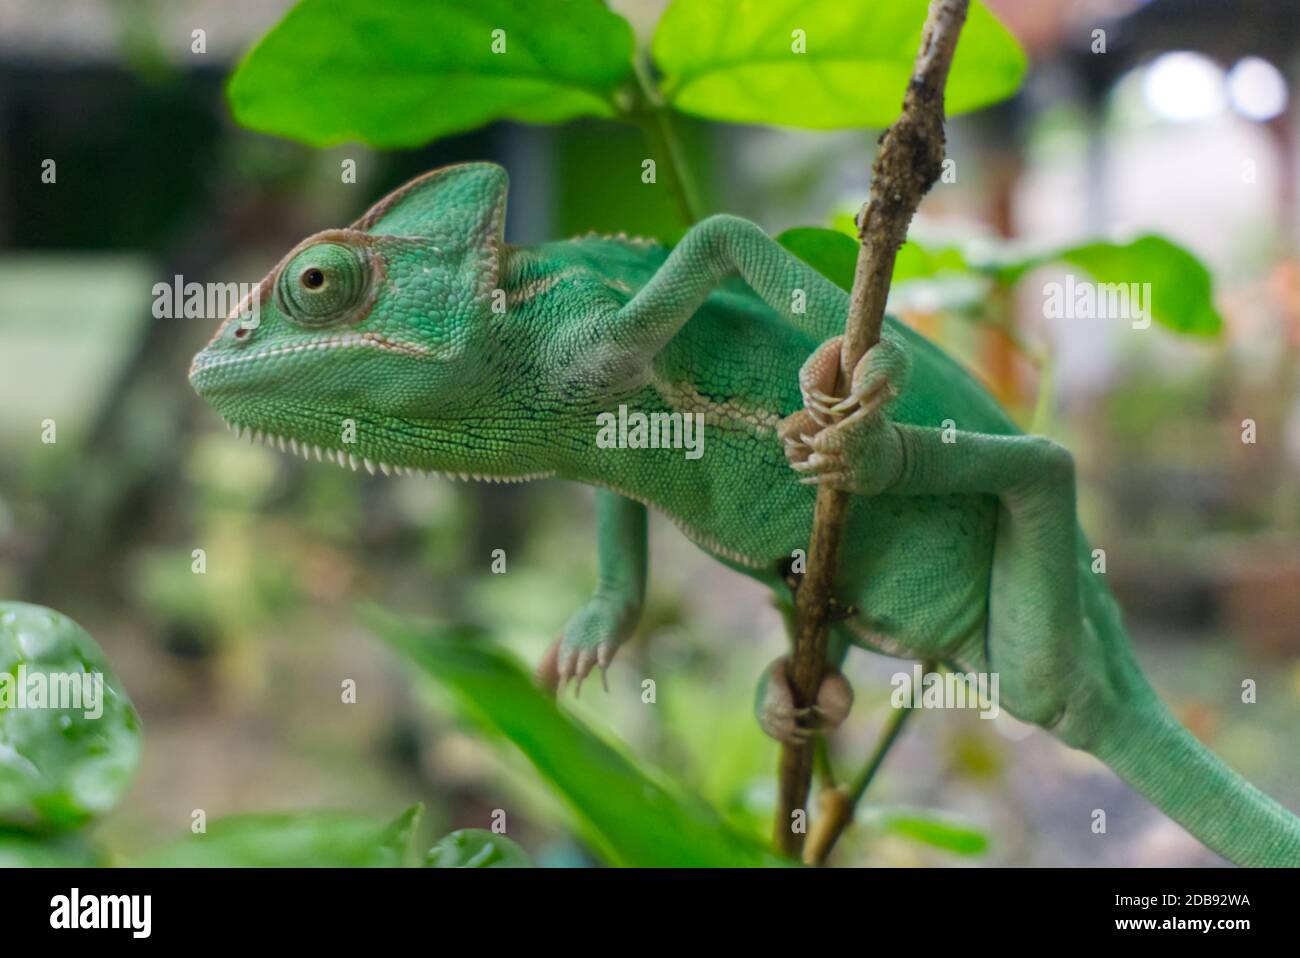 veiled chameleon hang on tree stem Stock Photo